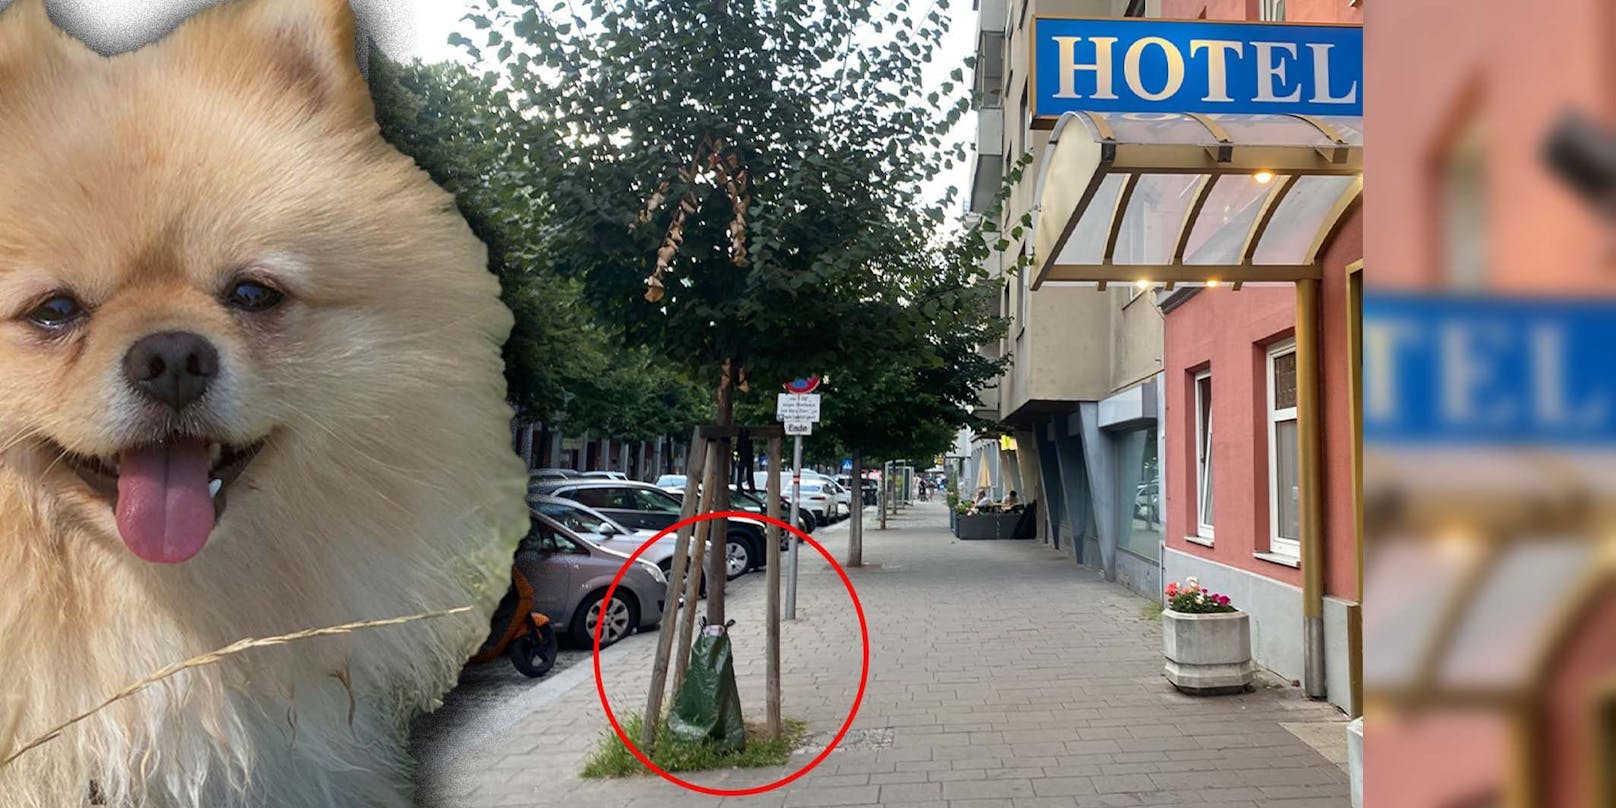 Jener Baum in der Landstraßer Hauptstraße "darf nicht angepinkelt werden", ist die Mitarbeiterin überzeugt.